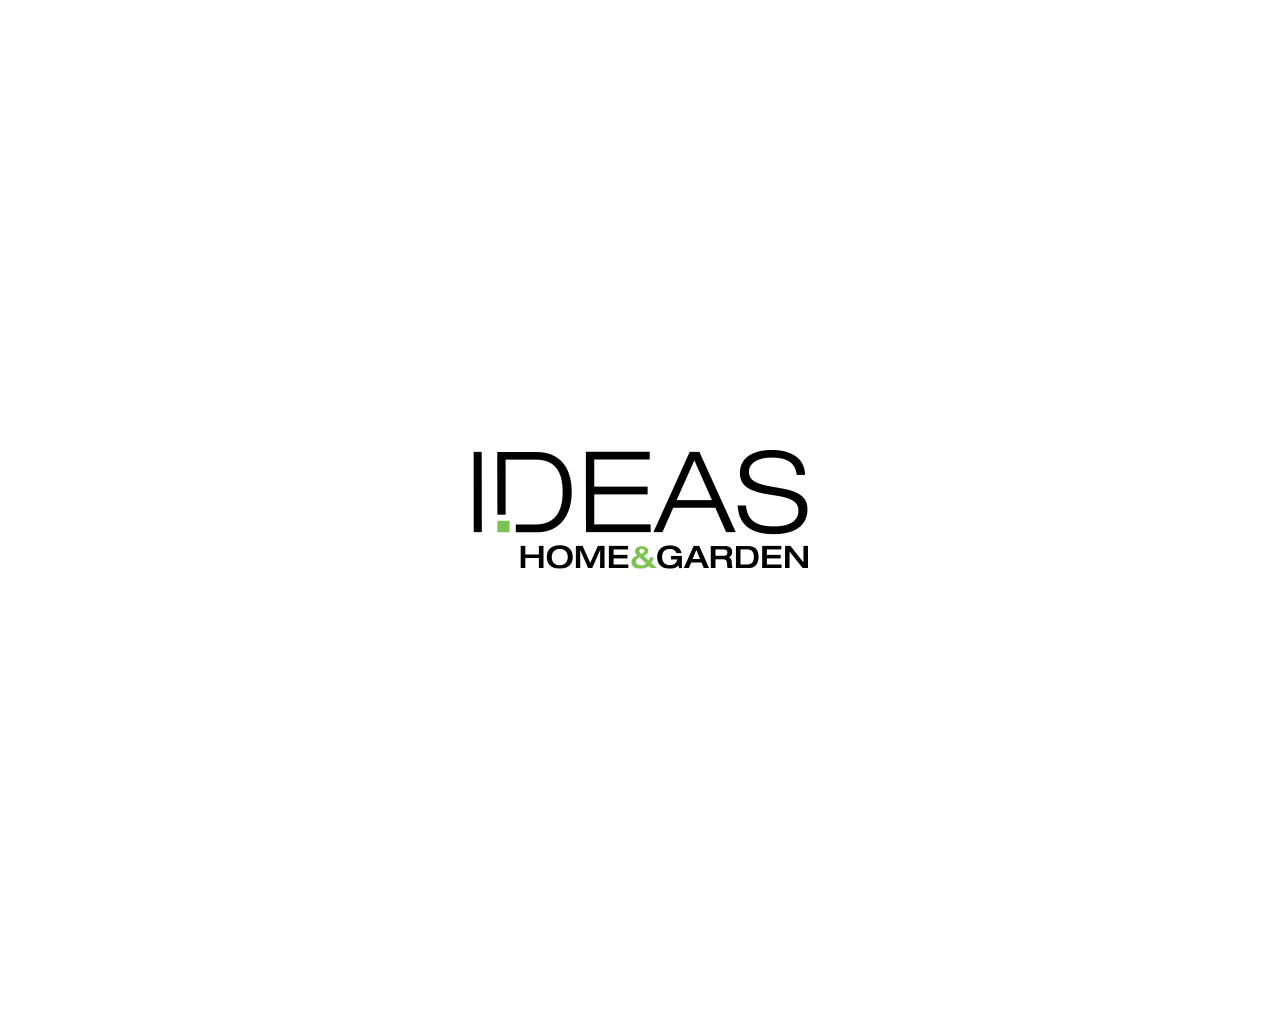 ideashomegarden.com